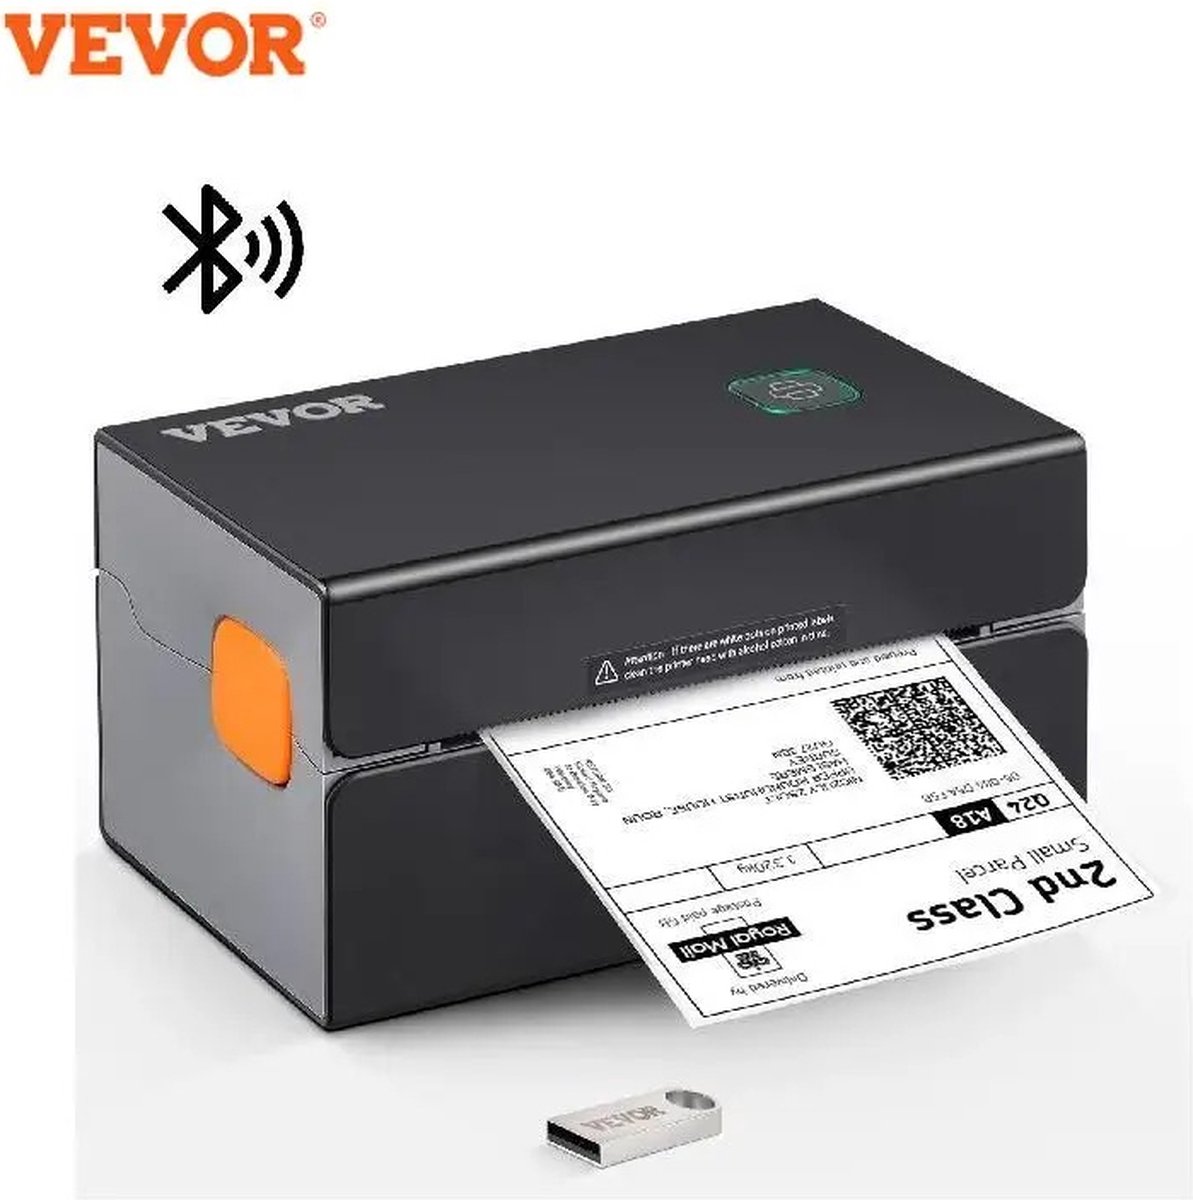 Vevor - Labelprinter - labelwriter - Kassabonprinter - labelmaker - Bluetooth + USB - 300DPI - 150 mm/sec - verzendlabelprinter - Zwart